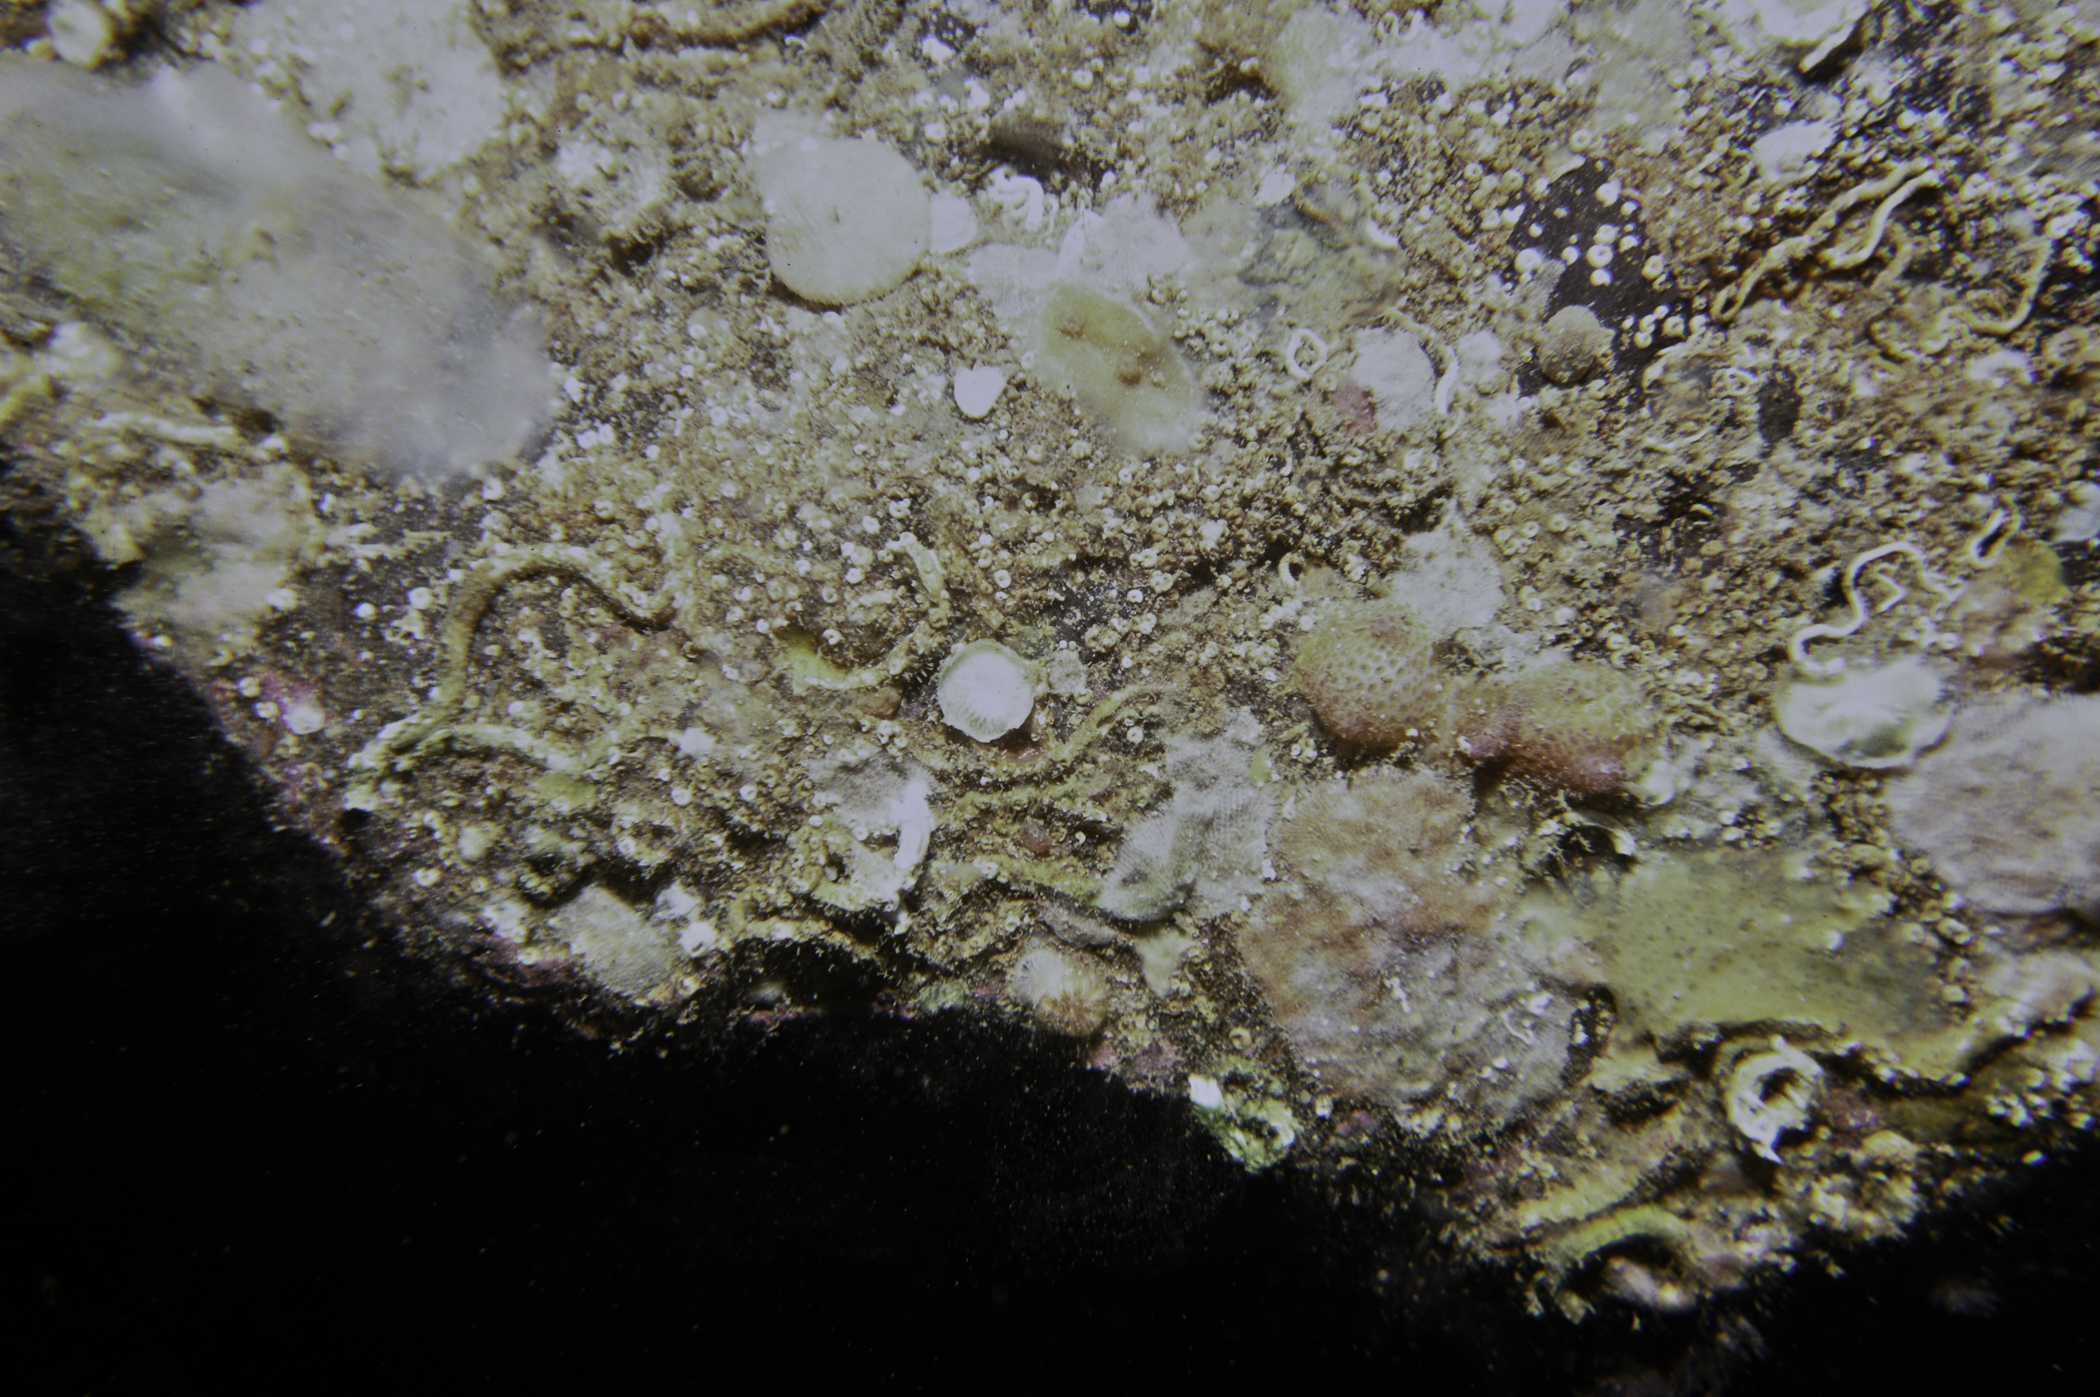 Pyura tessellata, Plagioecia patina. Site: East Coast, Rathlin Island. 